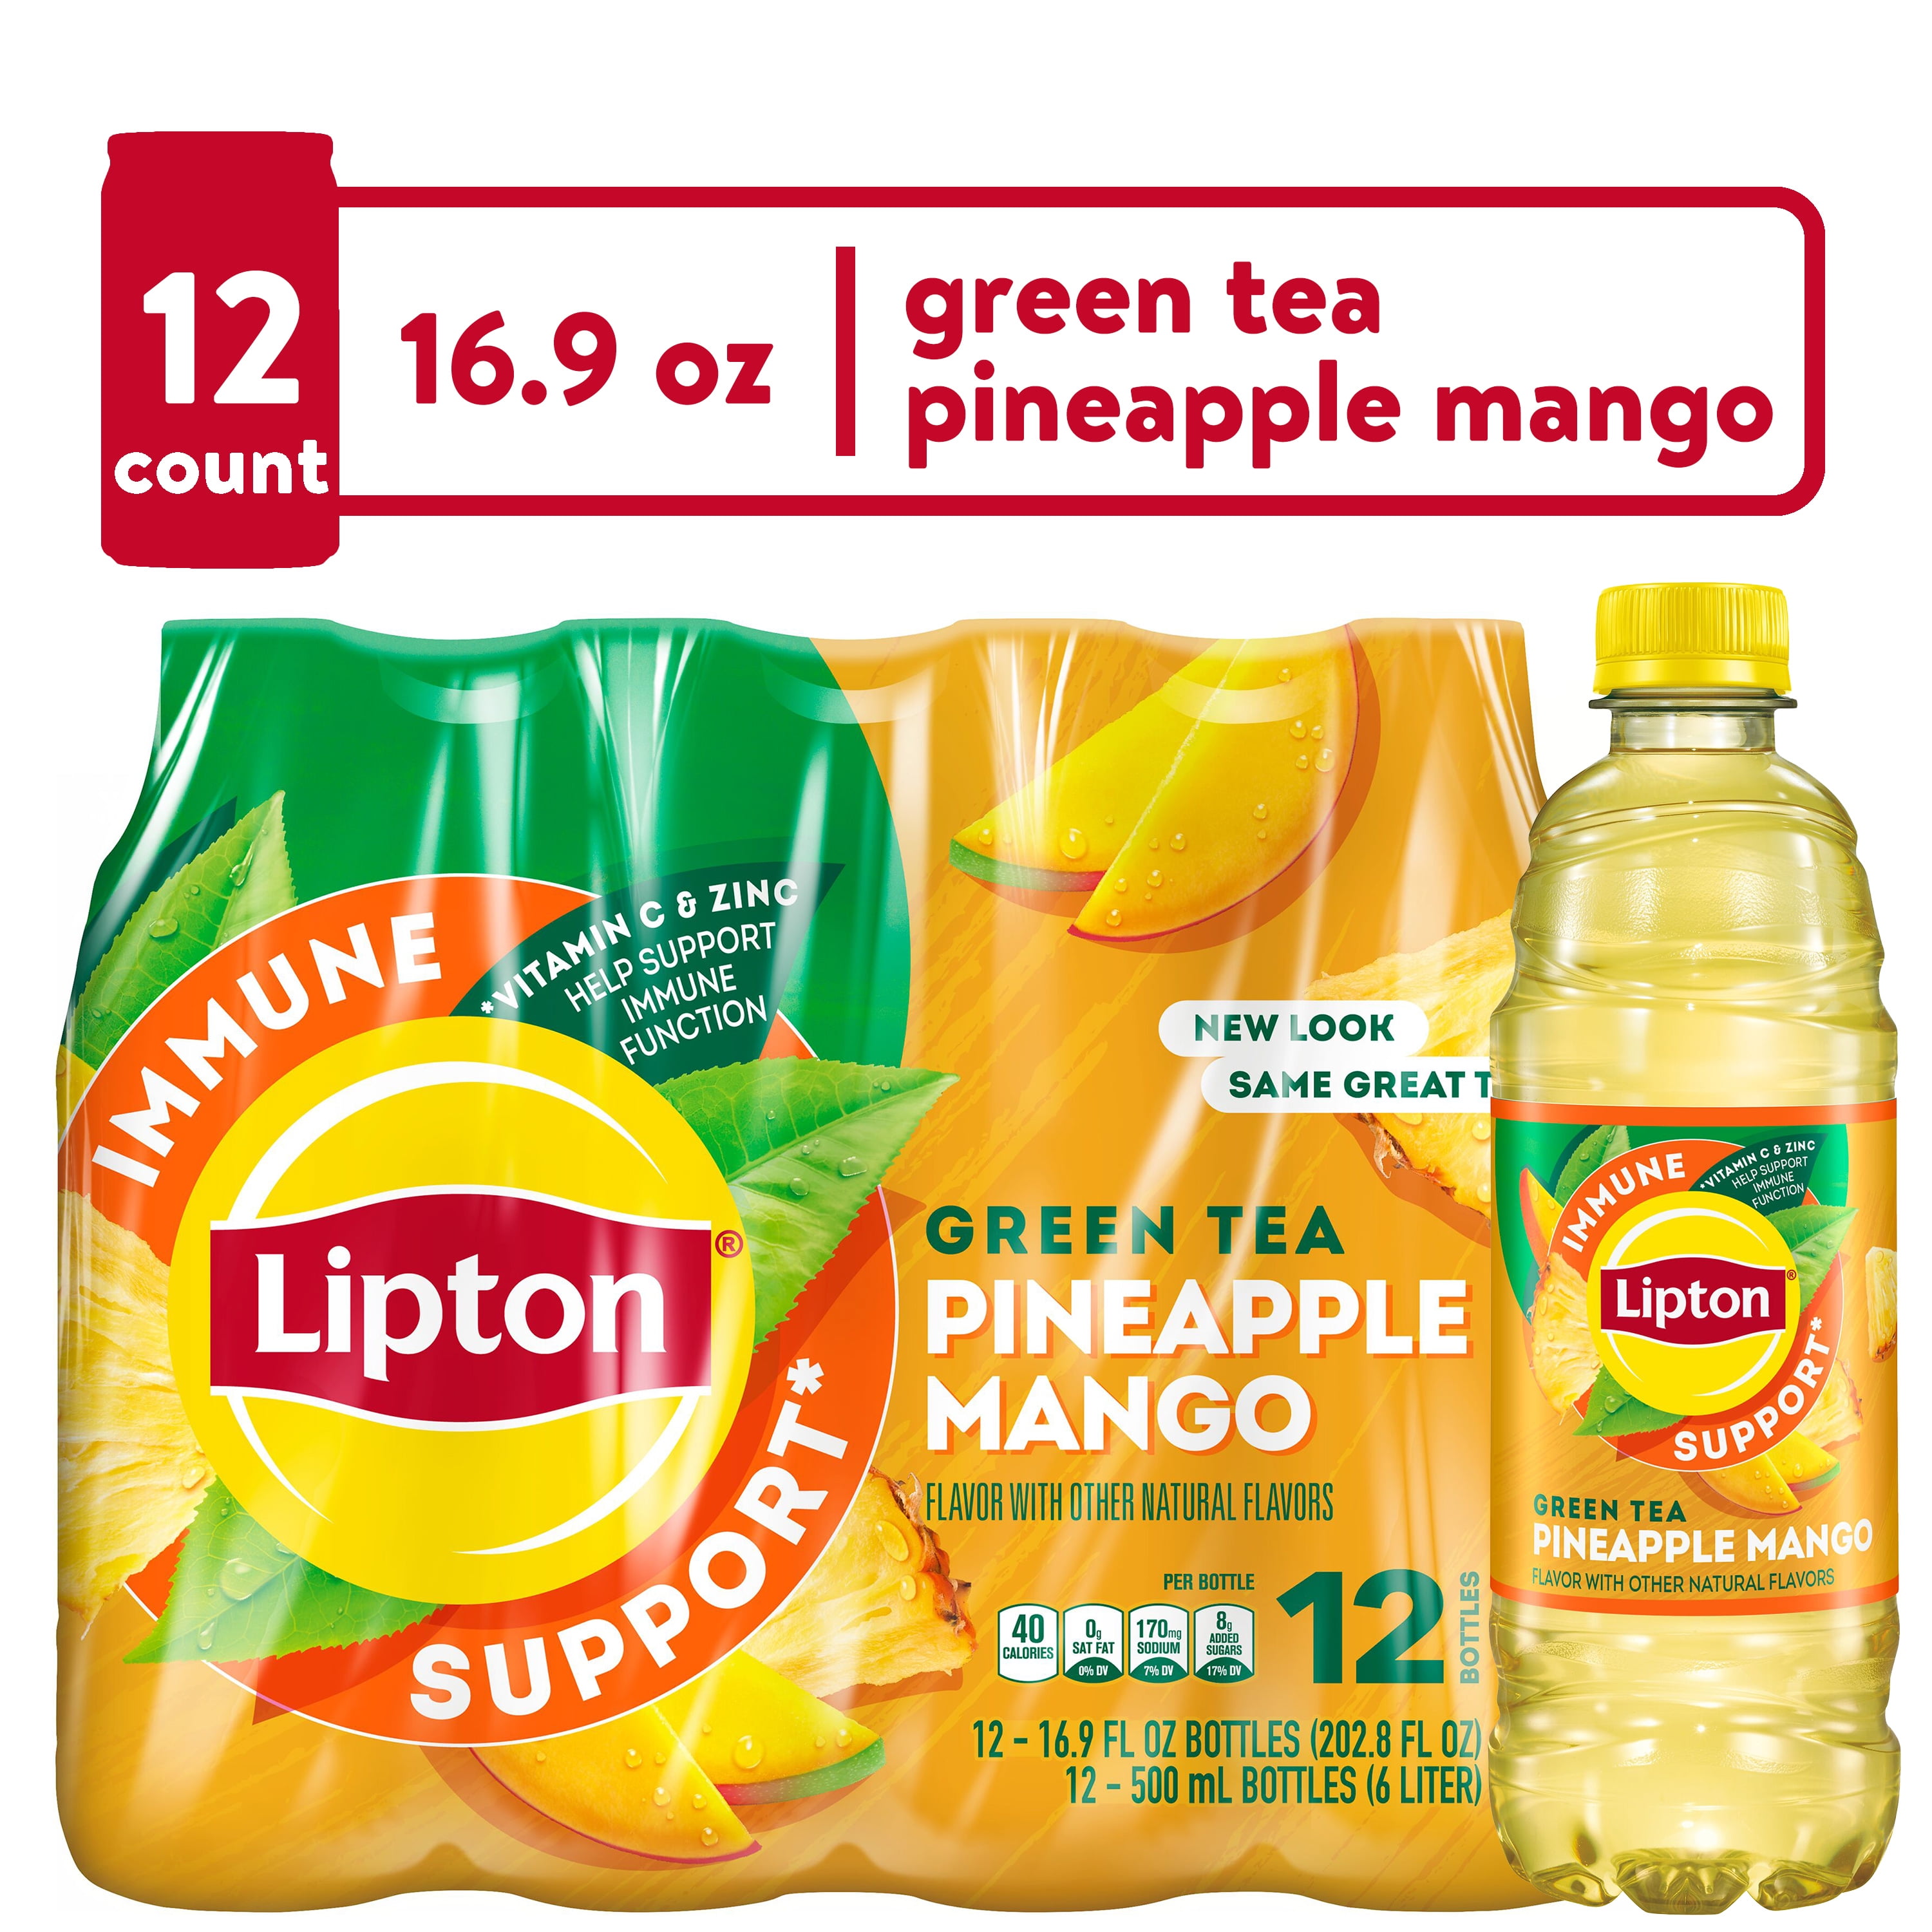 Lipton Green Tea w/ Citrus 16.9 Fluid Ounces PET Bottle Single, Tea